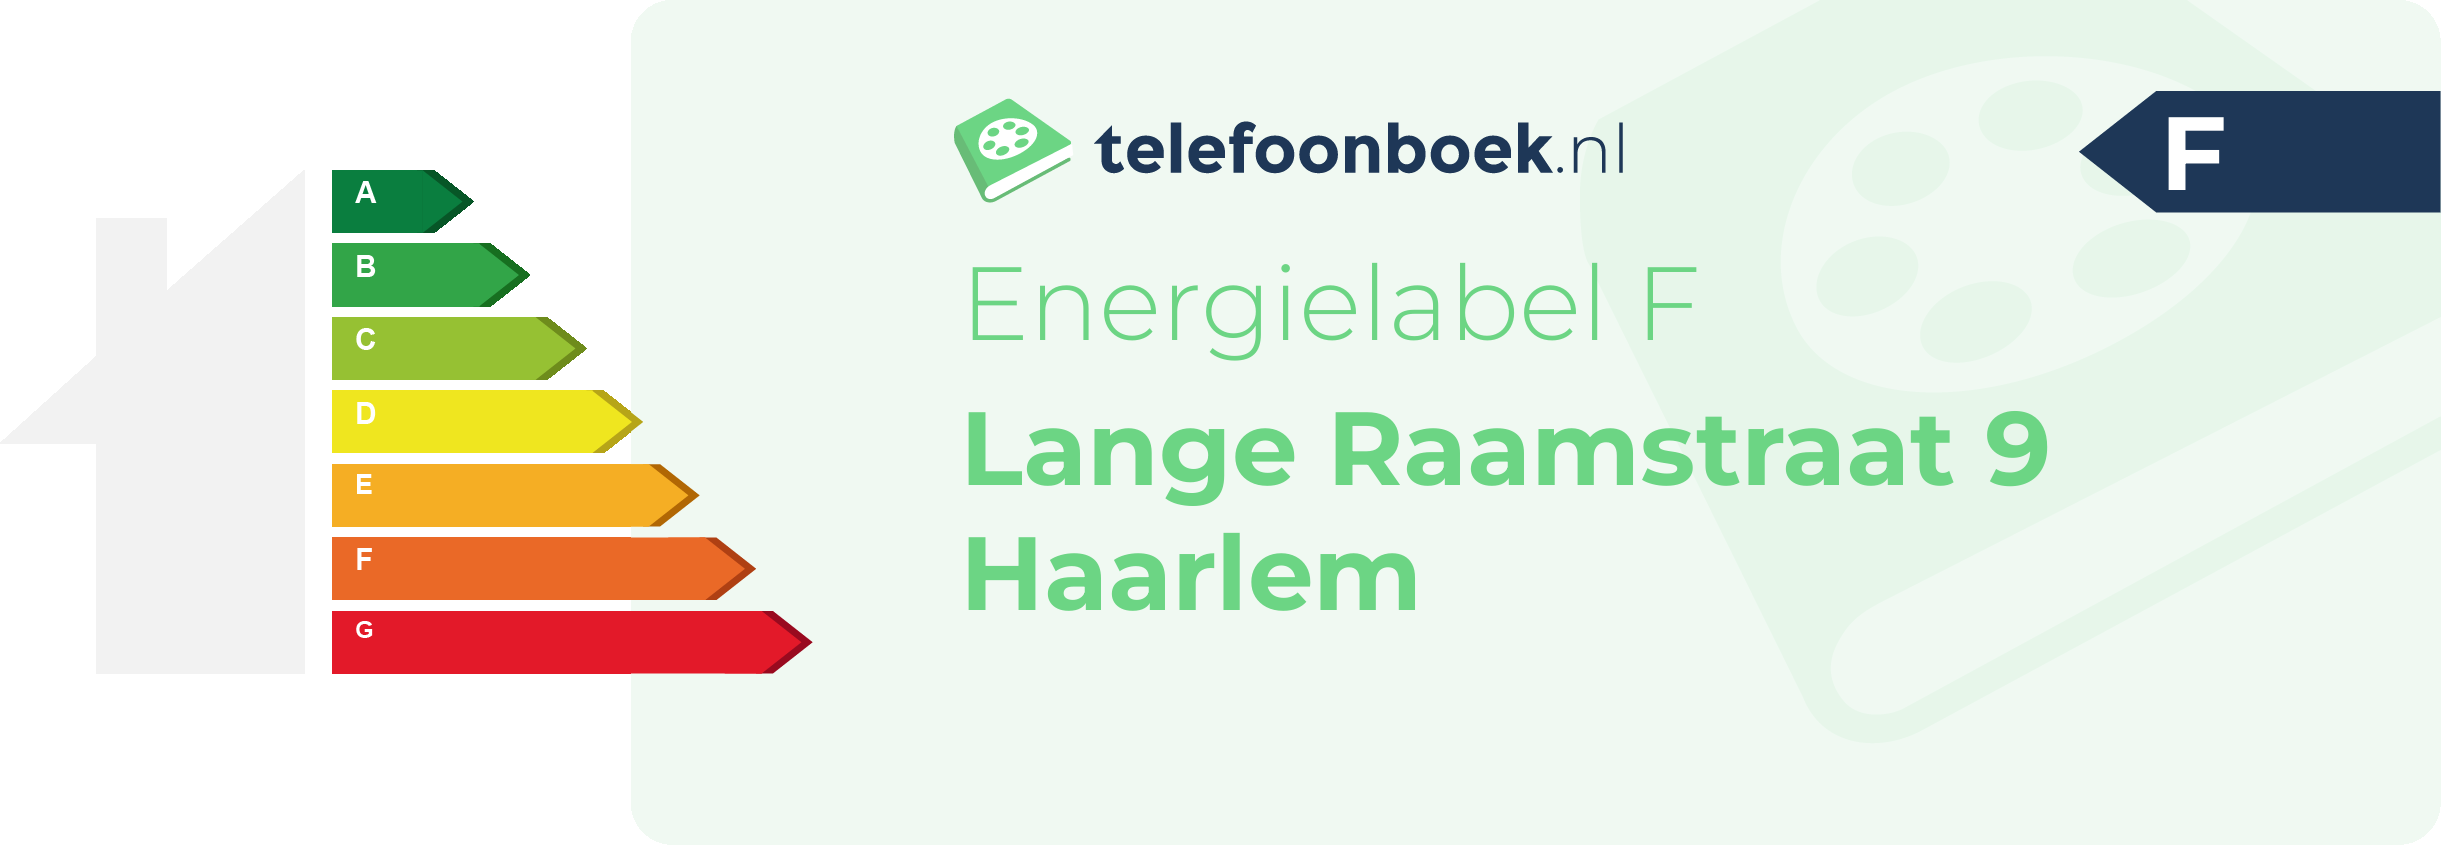 Energielabel Lange Raamstraat 9 Haarlem